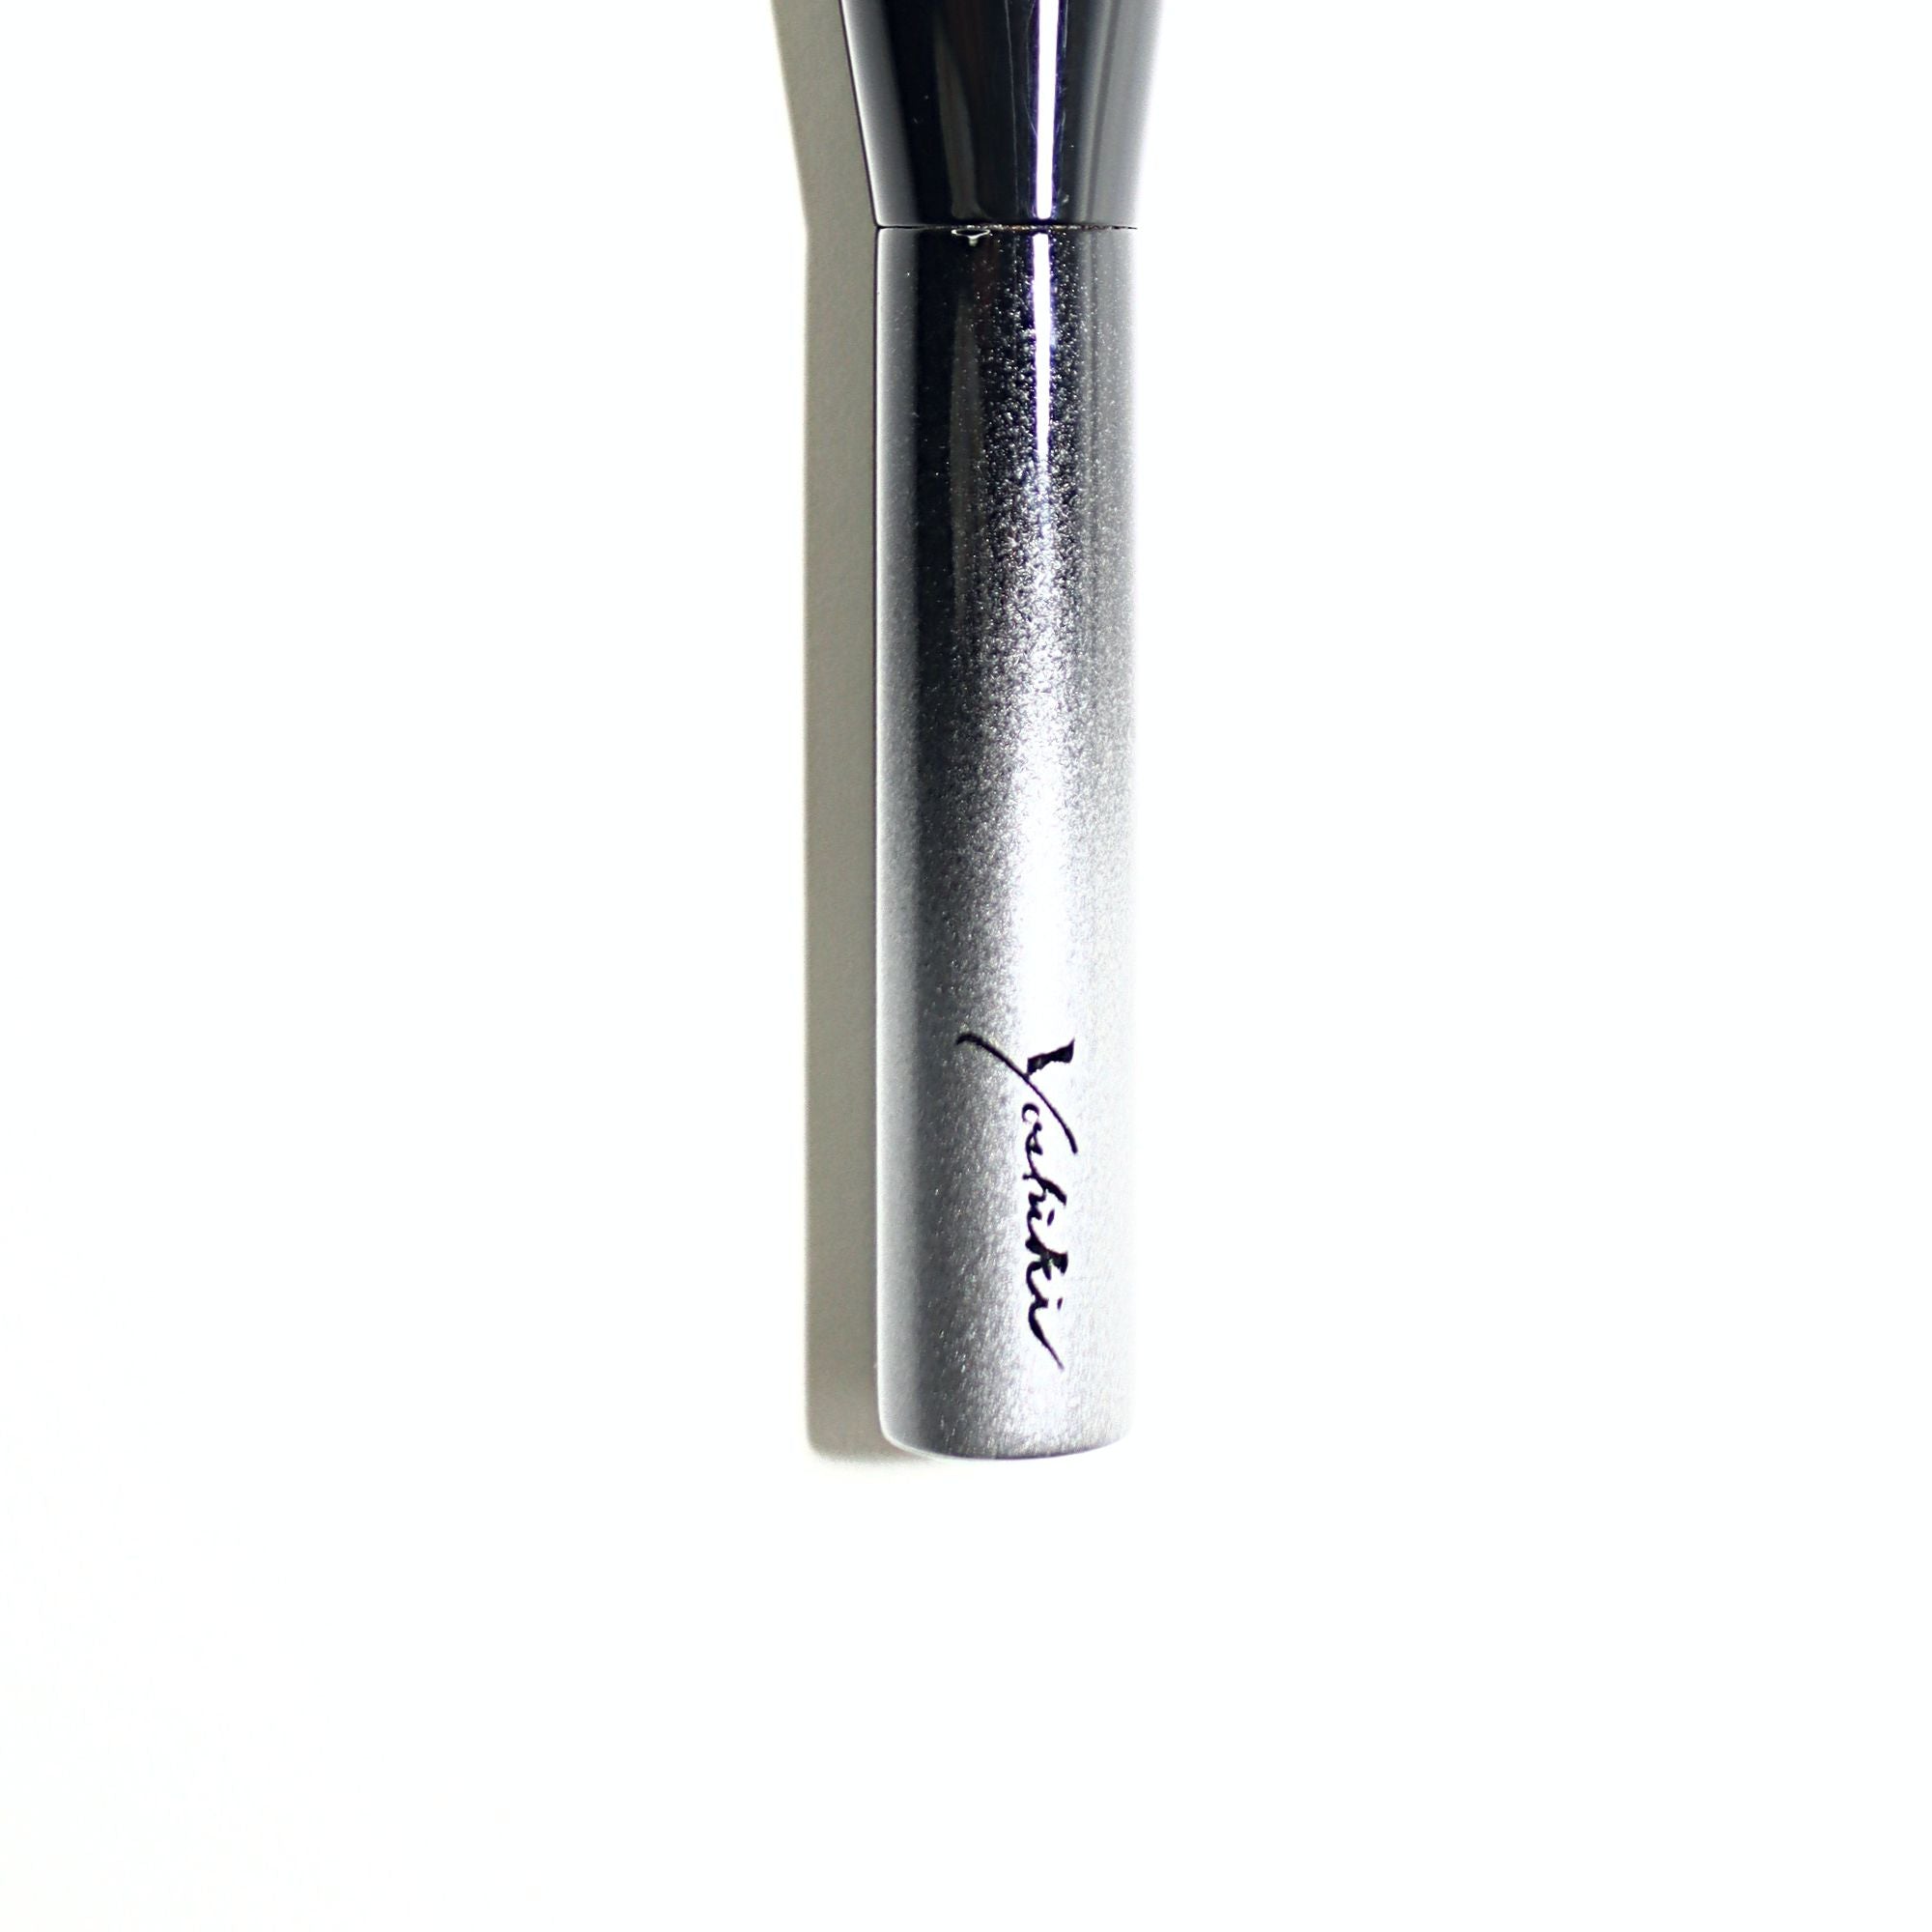 Koyudo Yoshiki Monochrome Gradient 3-Brush Set (Limited Edition) [Y-GS3] - Fude Beauty, Japanese Makeup Brushes